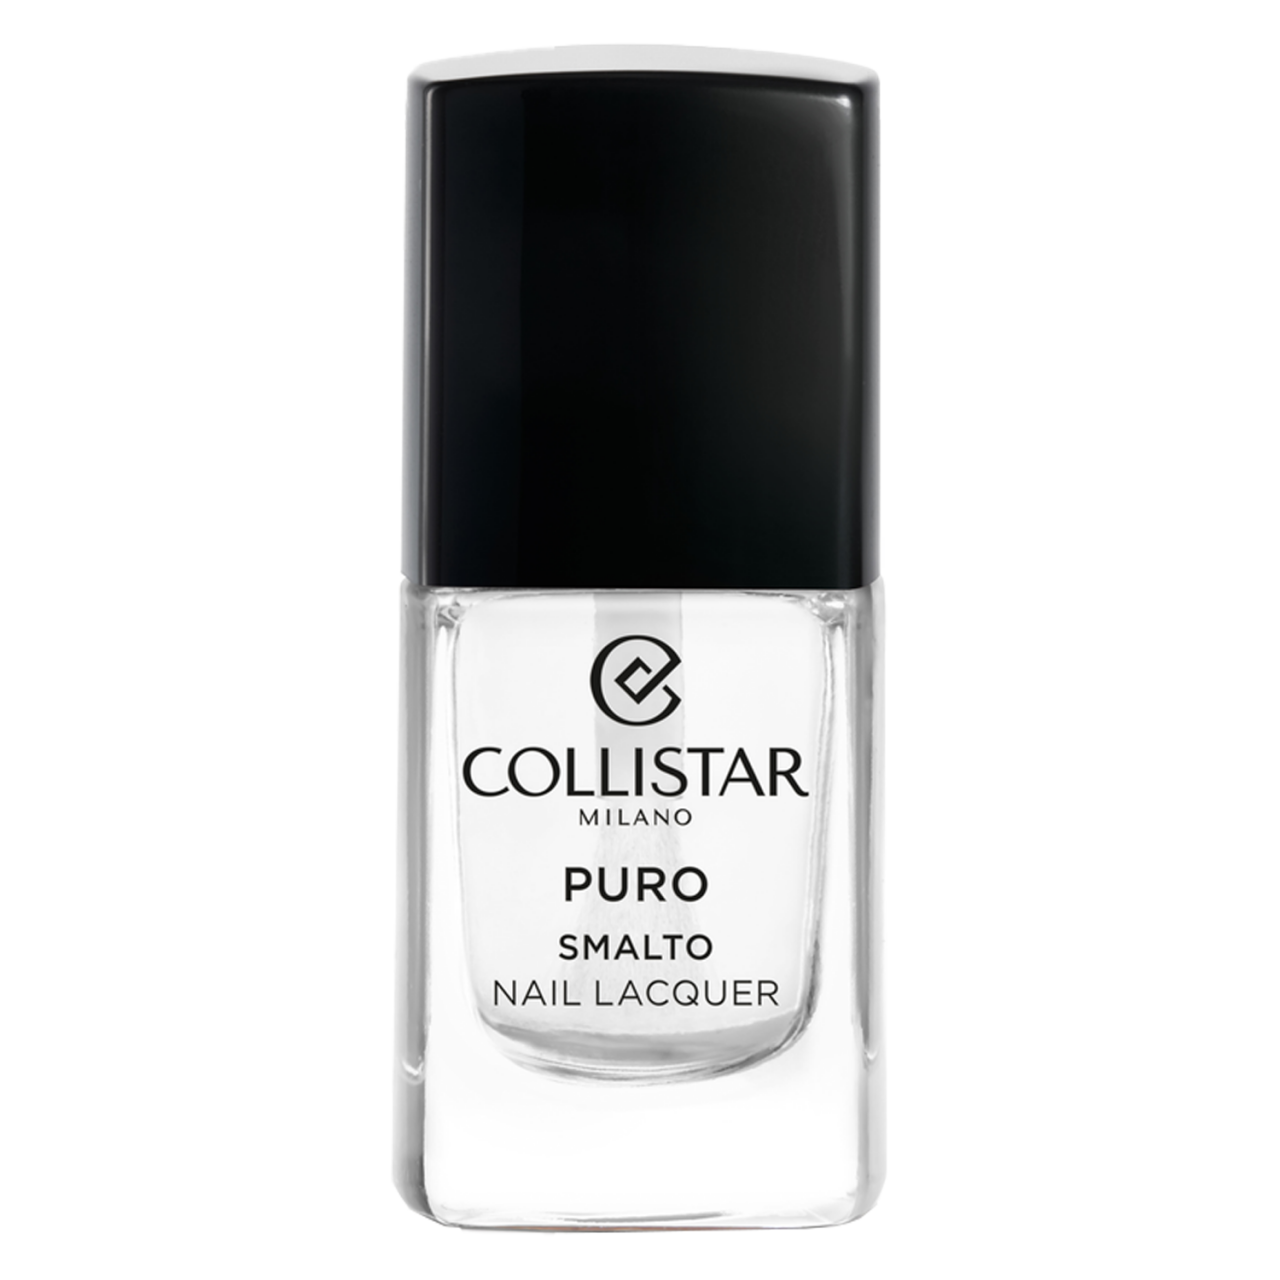 CS Nails - Puro Nail Lacquer - 301 Cristallo Puro von Collistar